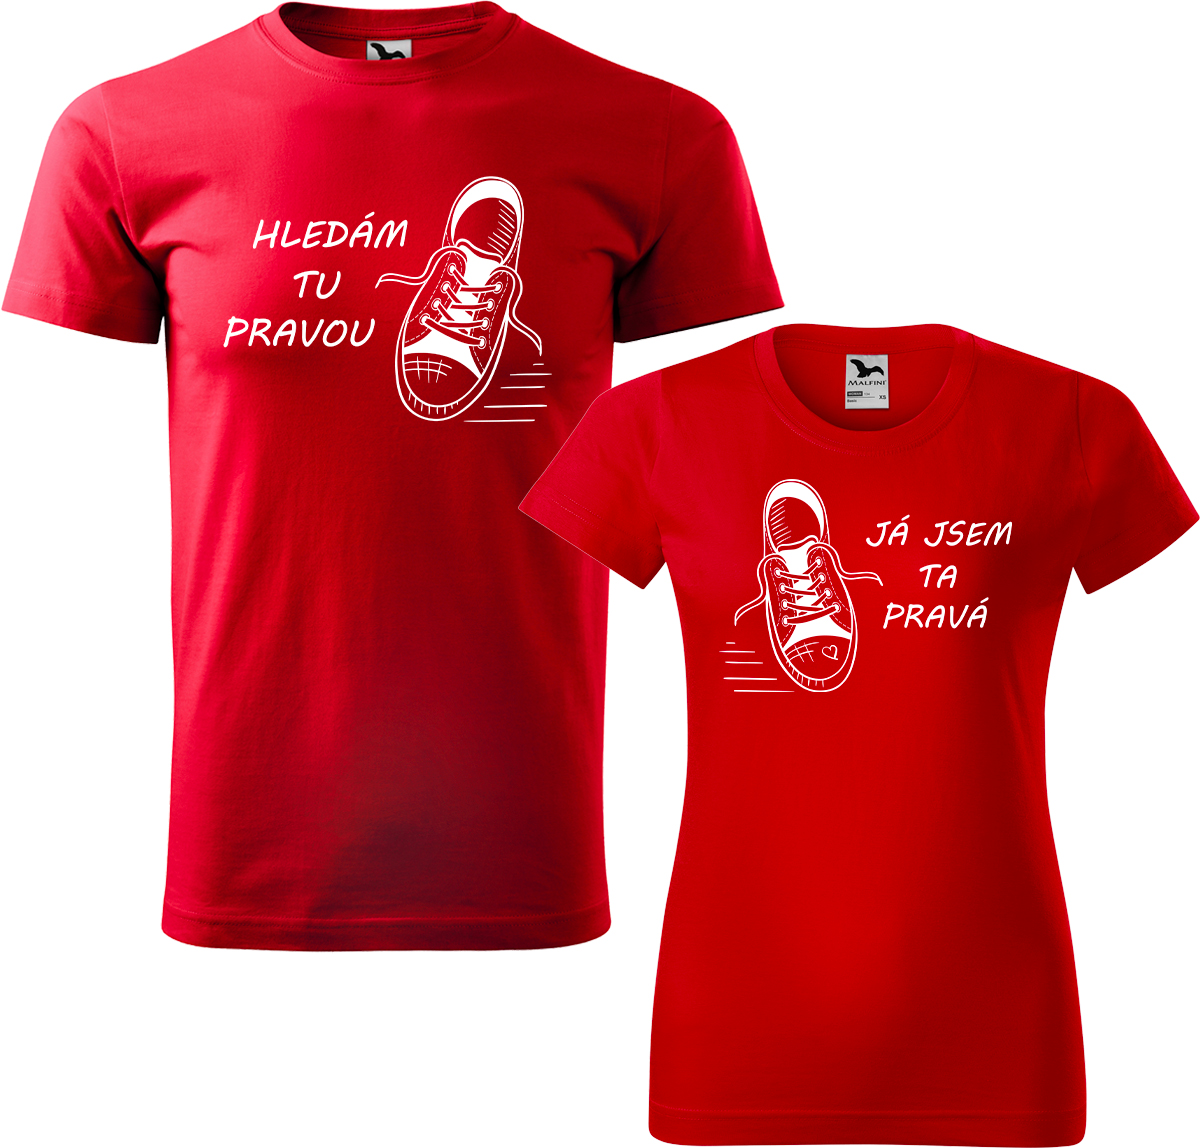 Trička pro páry - Kecky Barva: Červená (07), Velikost dámské tričko: 3XL, Velikost pánské tričko: 4XL